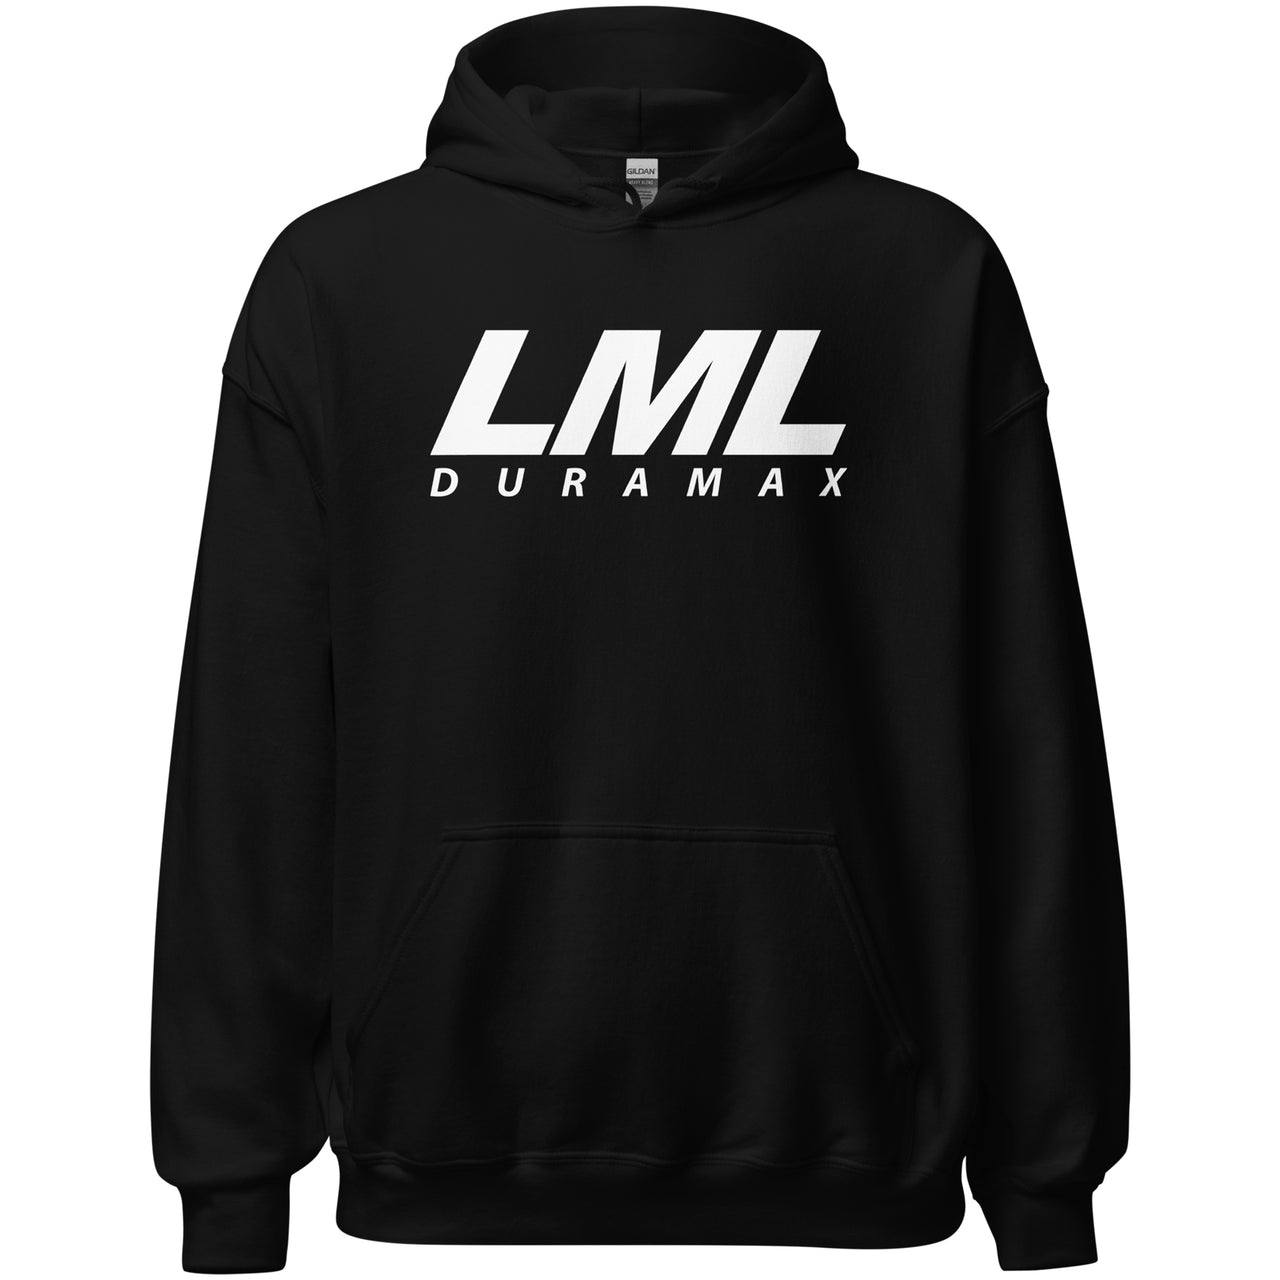 LML Duramax Hoodie, Diesel Truck American Flag Sweatshirt-In-Black-From Aggressive Thread